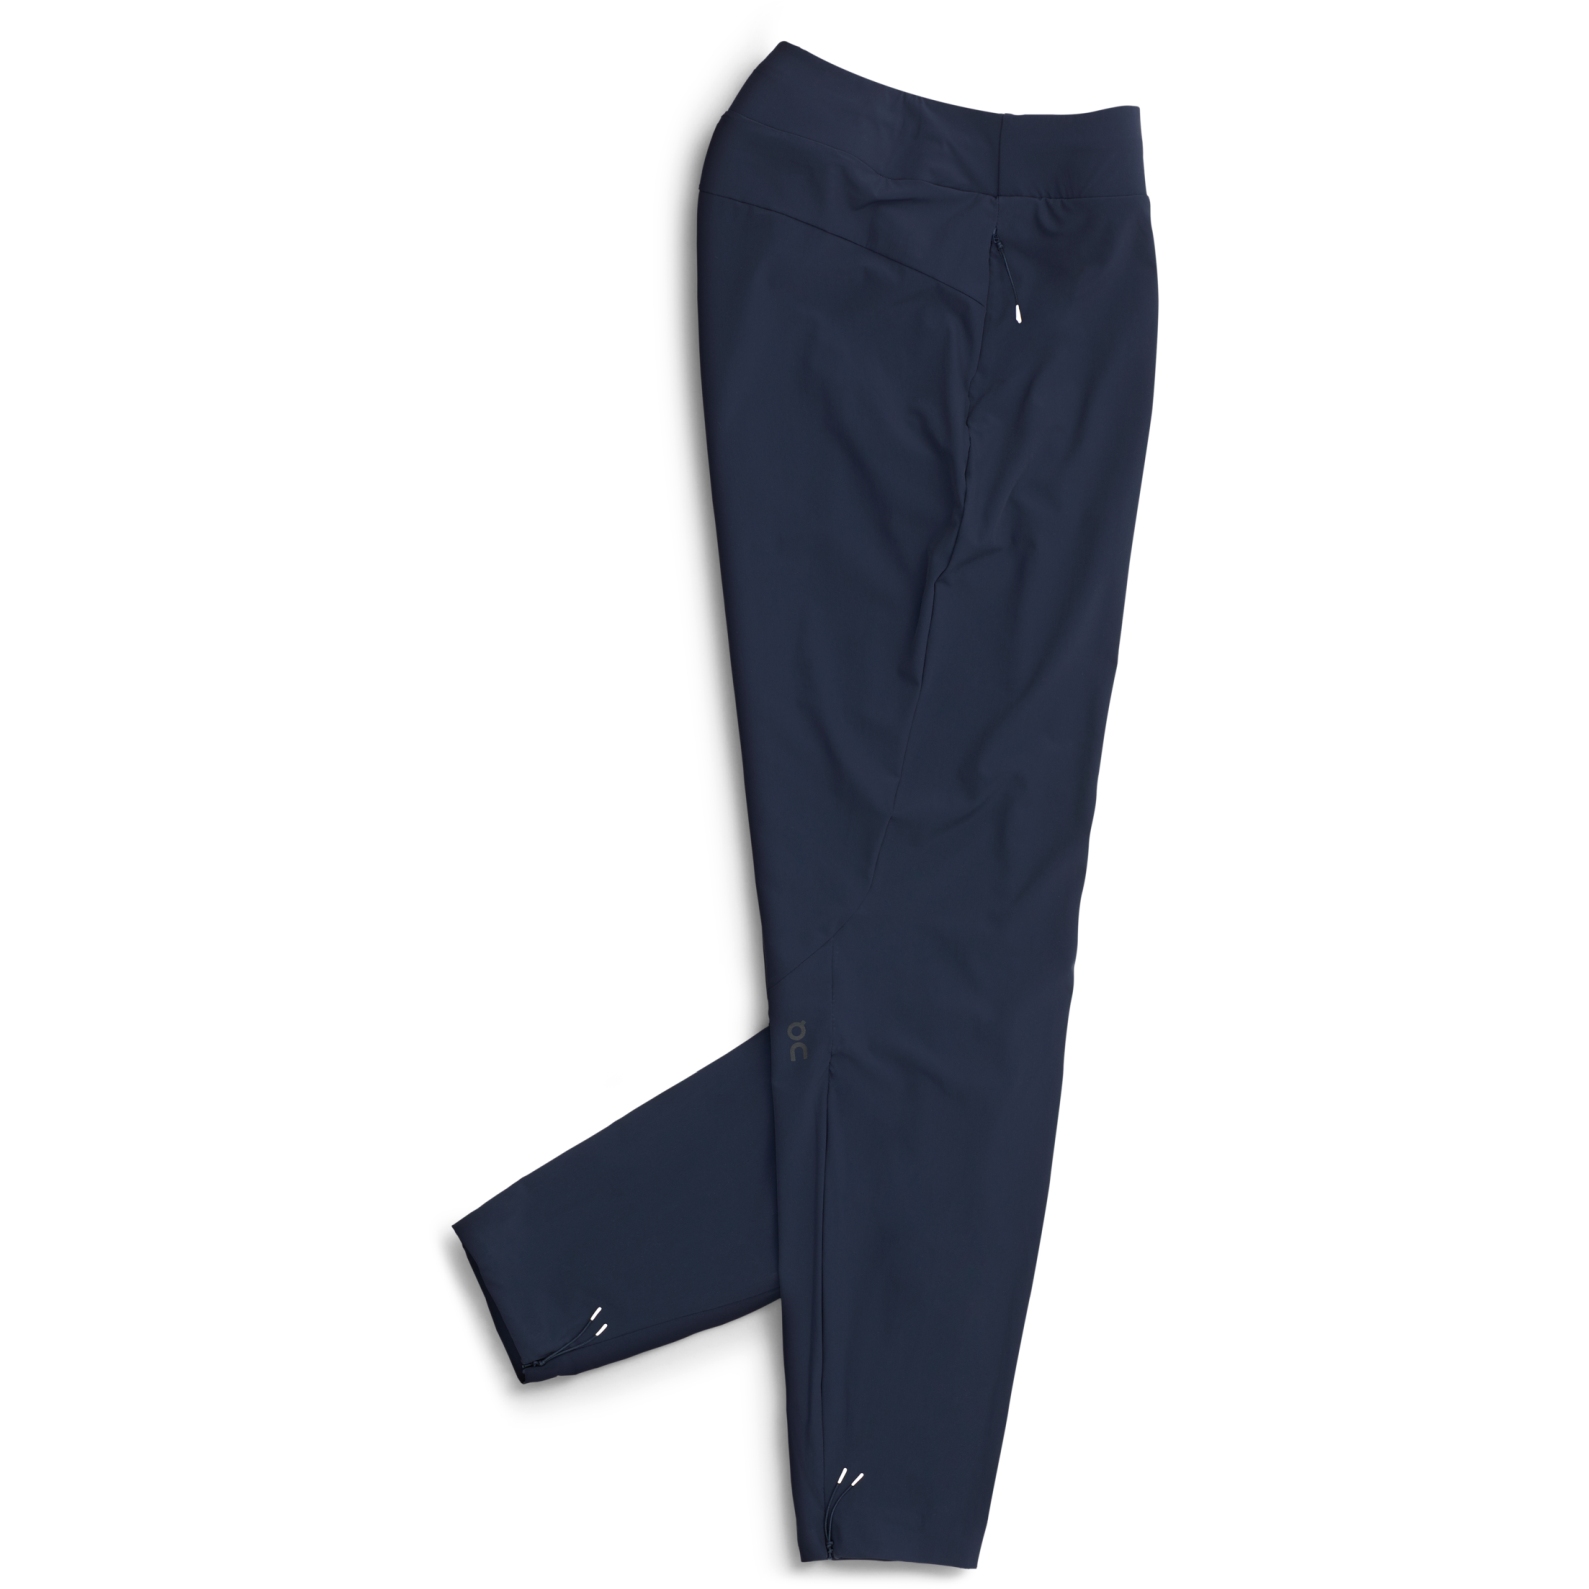 Produktbild von On Lightweight Pants Damenhose - Navy